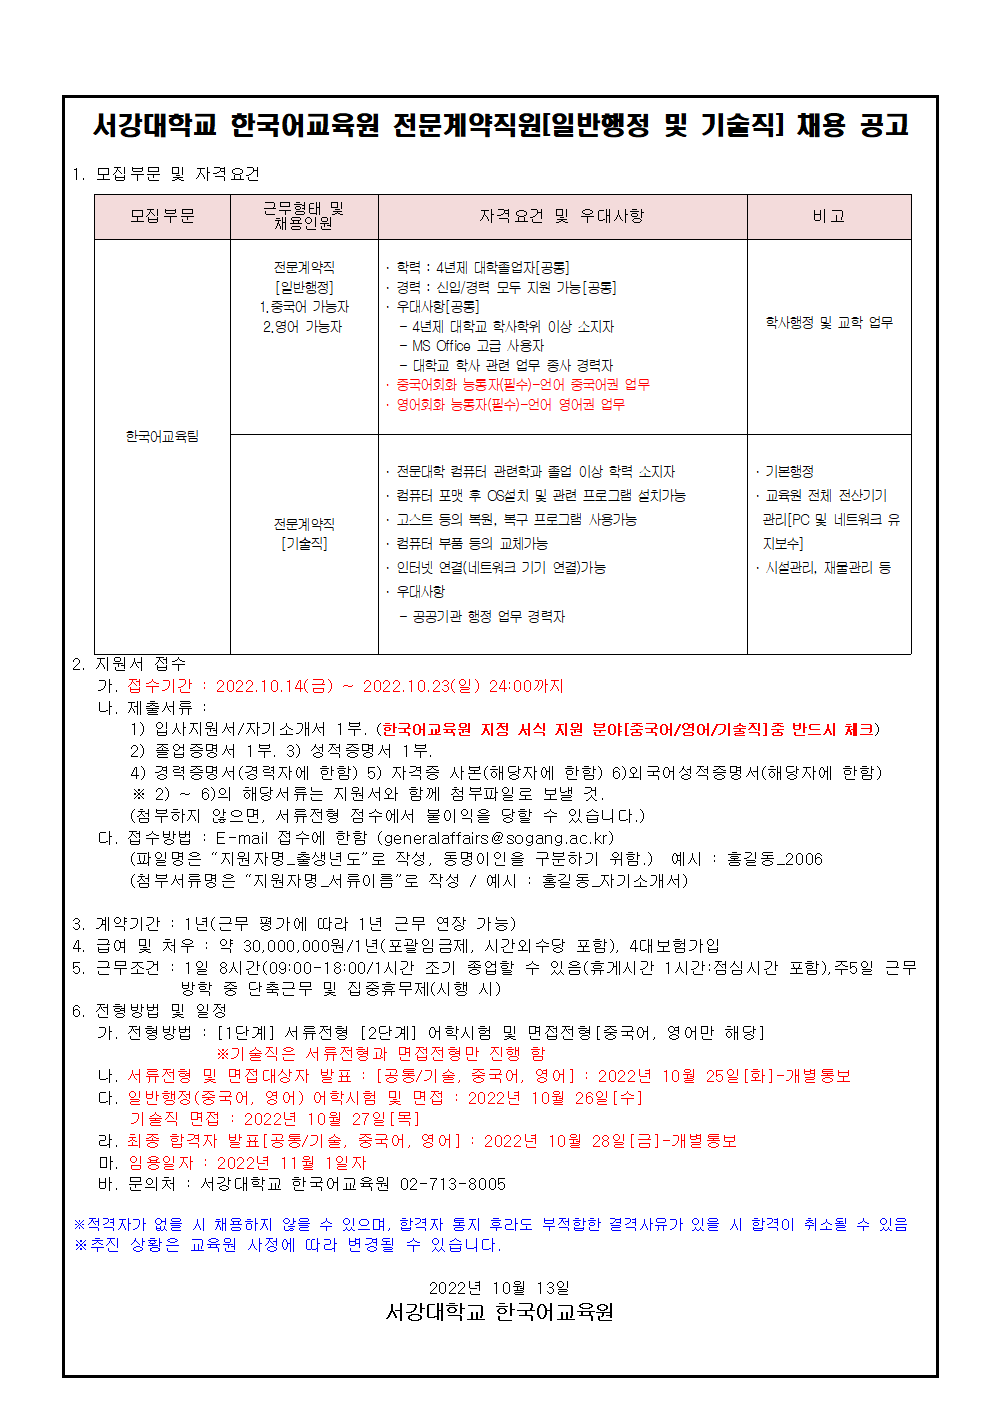 한국어교육원 전문계약직원 채용공고문 (1)001.png